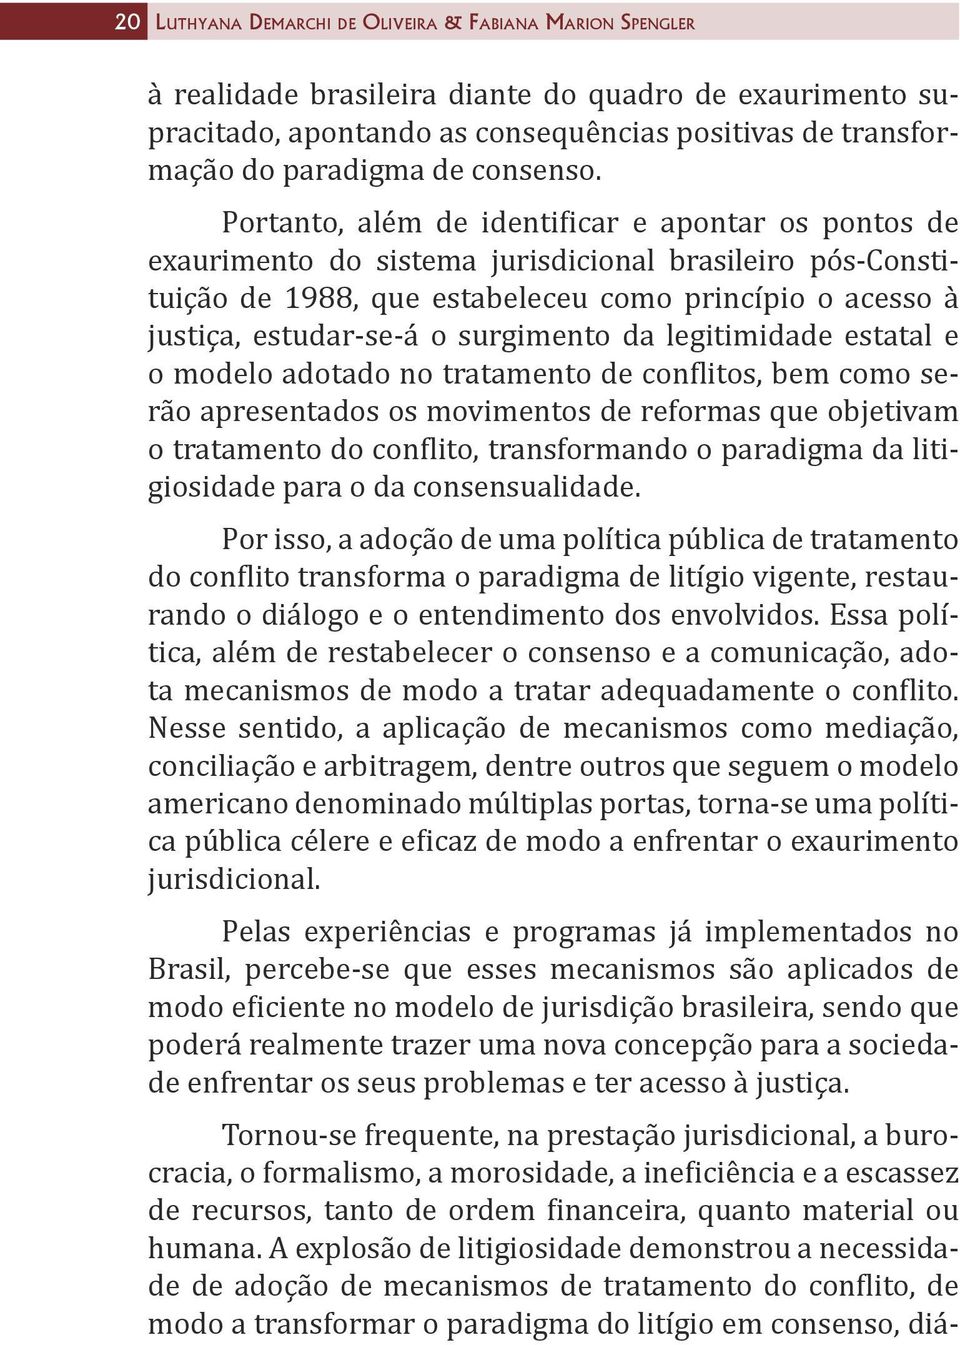 Portanto, além de identificar e apontar os pontos de exaurimento do sistema jurisdicional brasileiro pós-constituição de 1988, que estabeleceu como princípio o acesso à justiça, estudar-se-á o